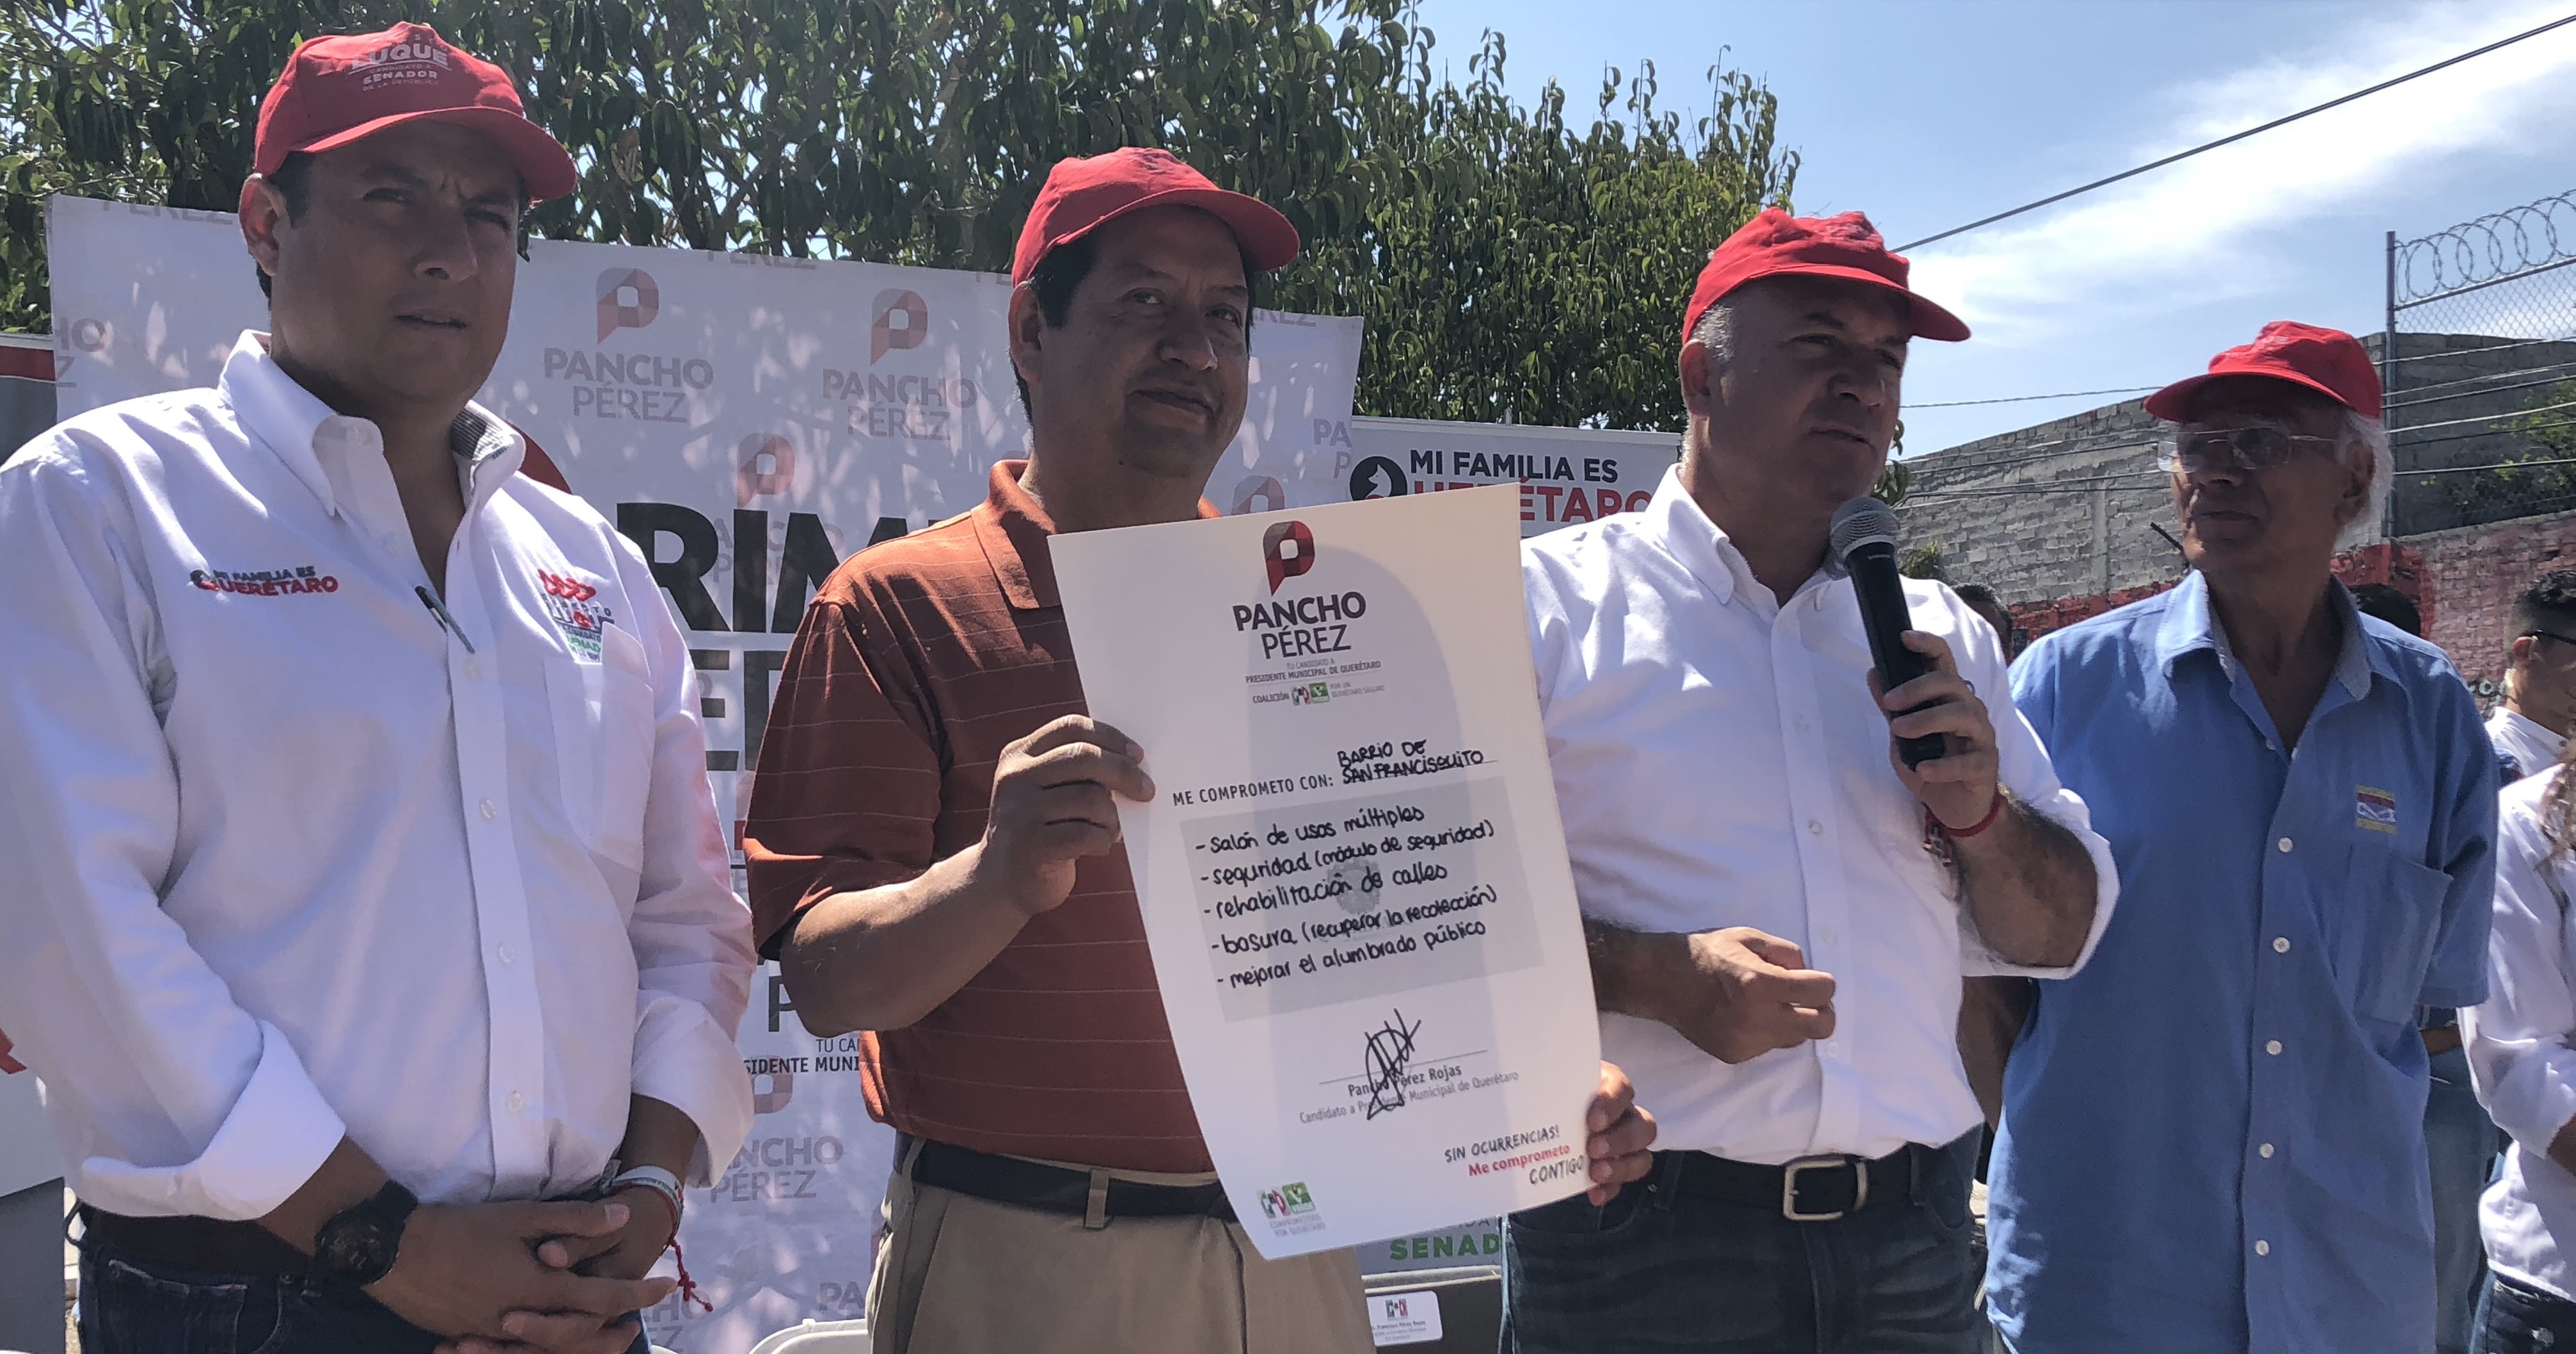  Promete Pancho Pérez Salario Rosa y otorgar 51% de empleos municipales a mujeres